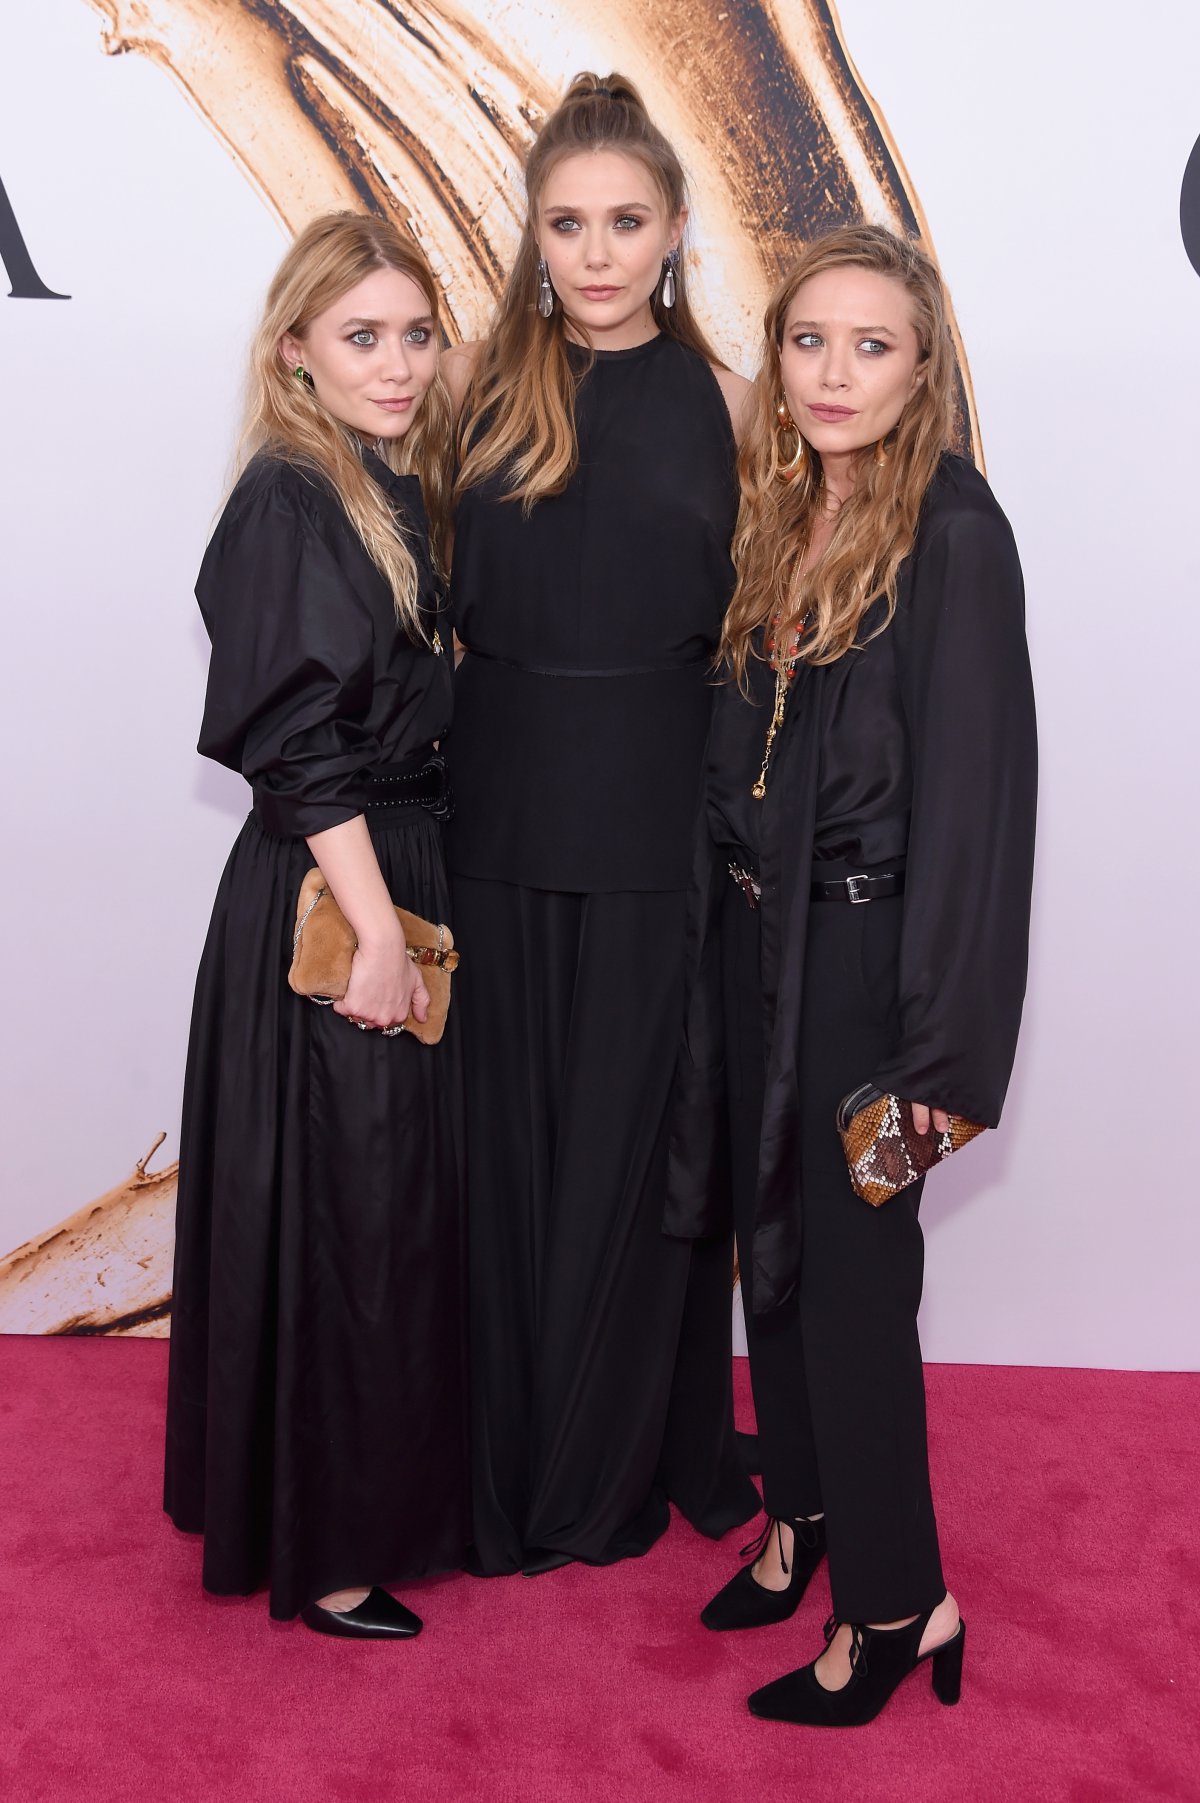 Mary Kate y Ashley Olsen: Treinta años siendo iconos de estilo |  Fotogalería | Moda y Belleza | LOS40